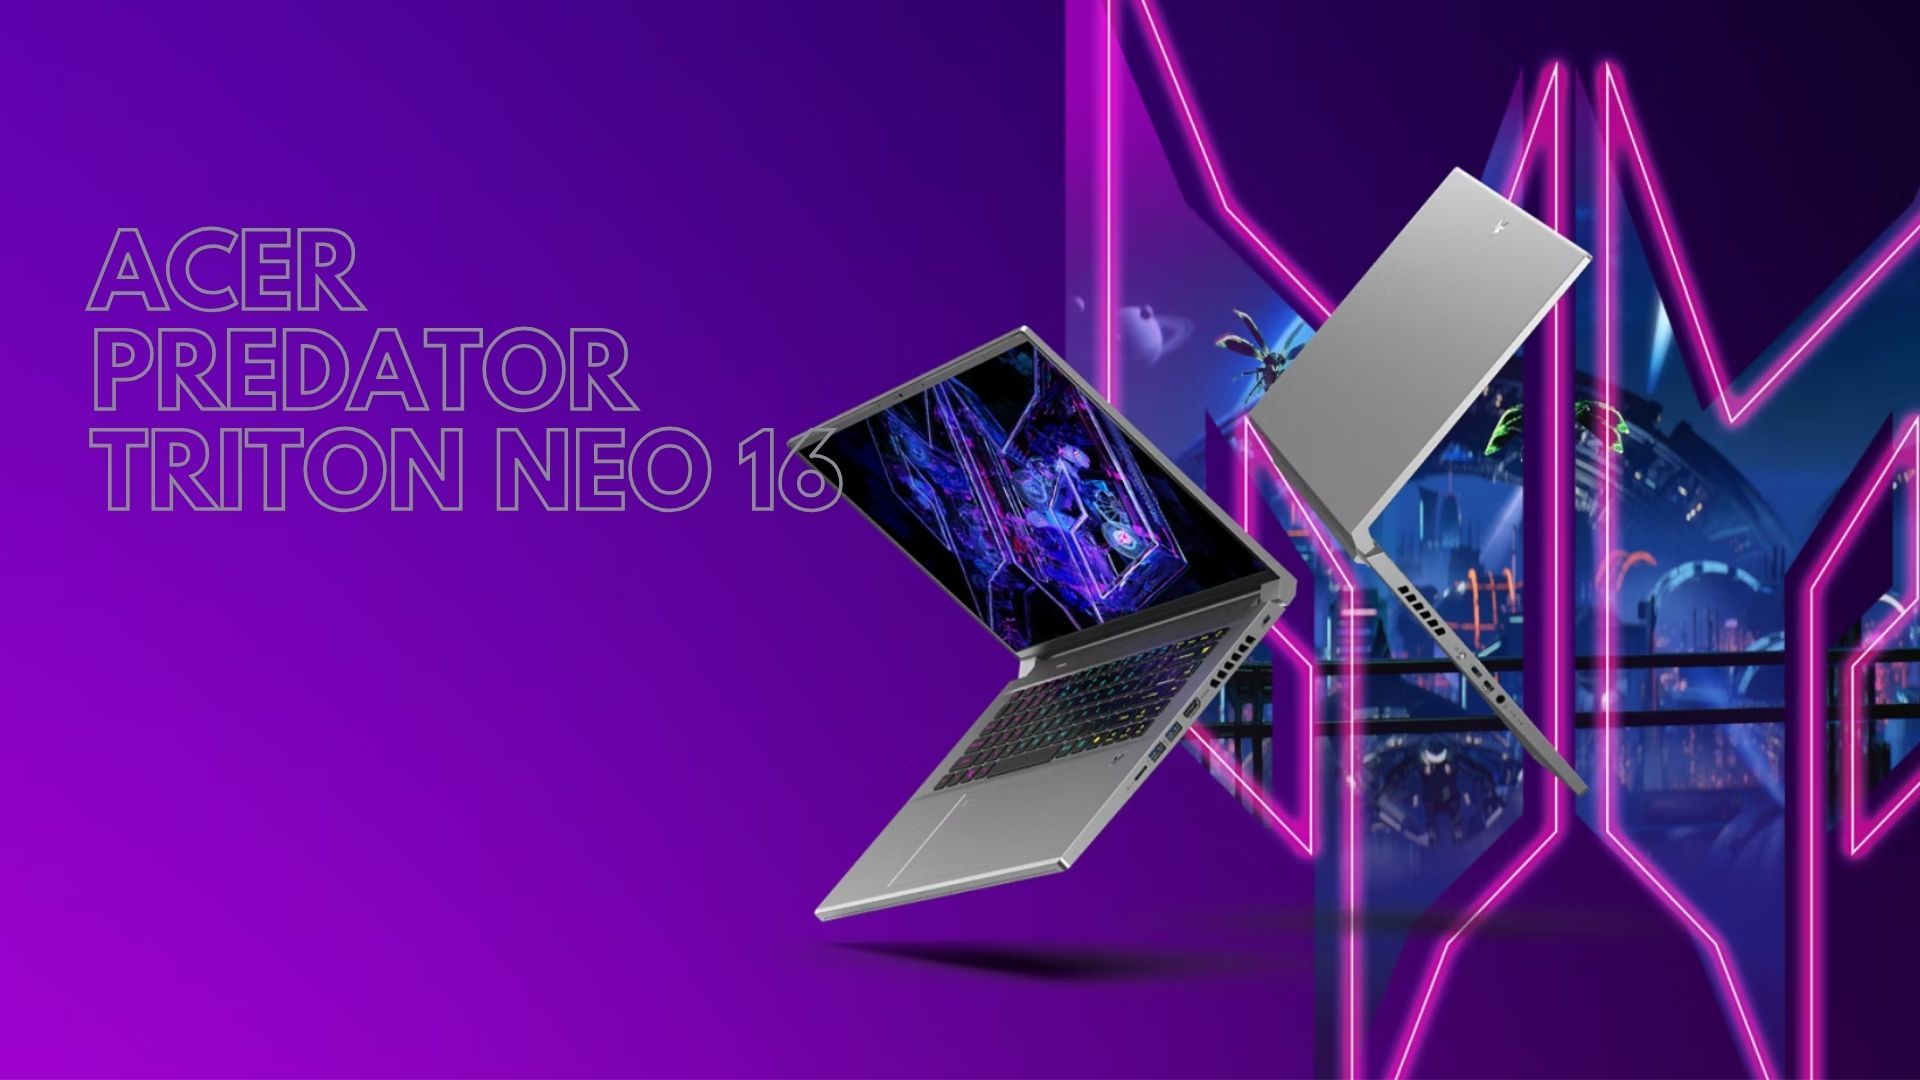 Kekuatan dan Portabilitas dalam Satu Paket: Review Acer Predator Triton Neo 16